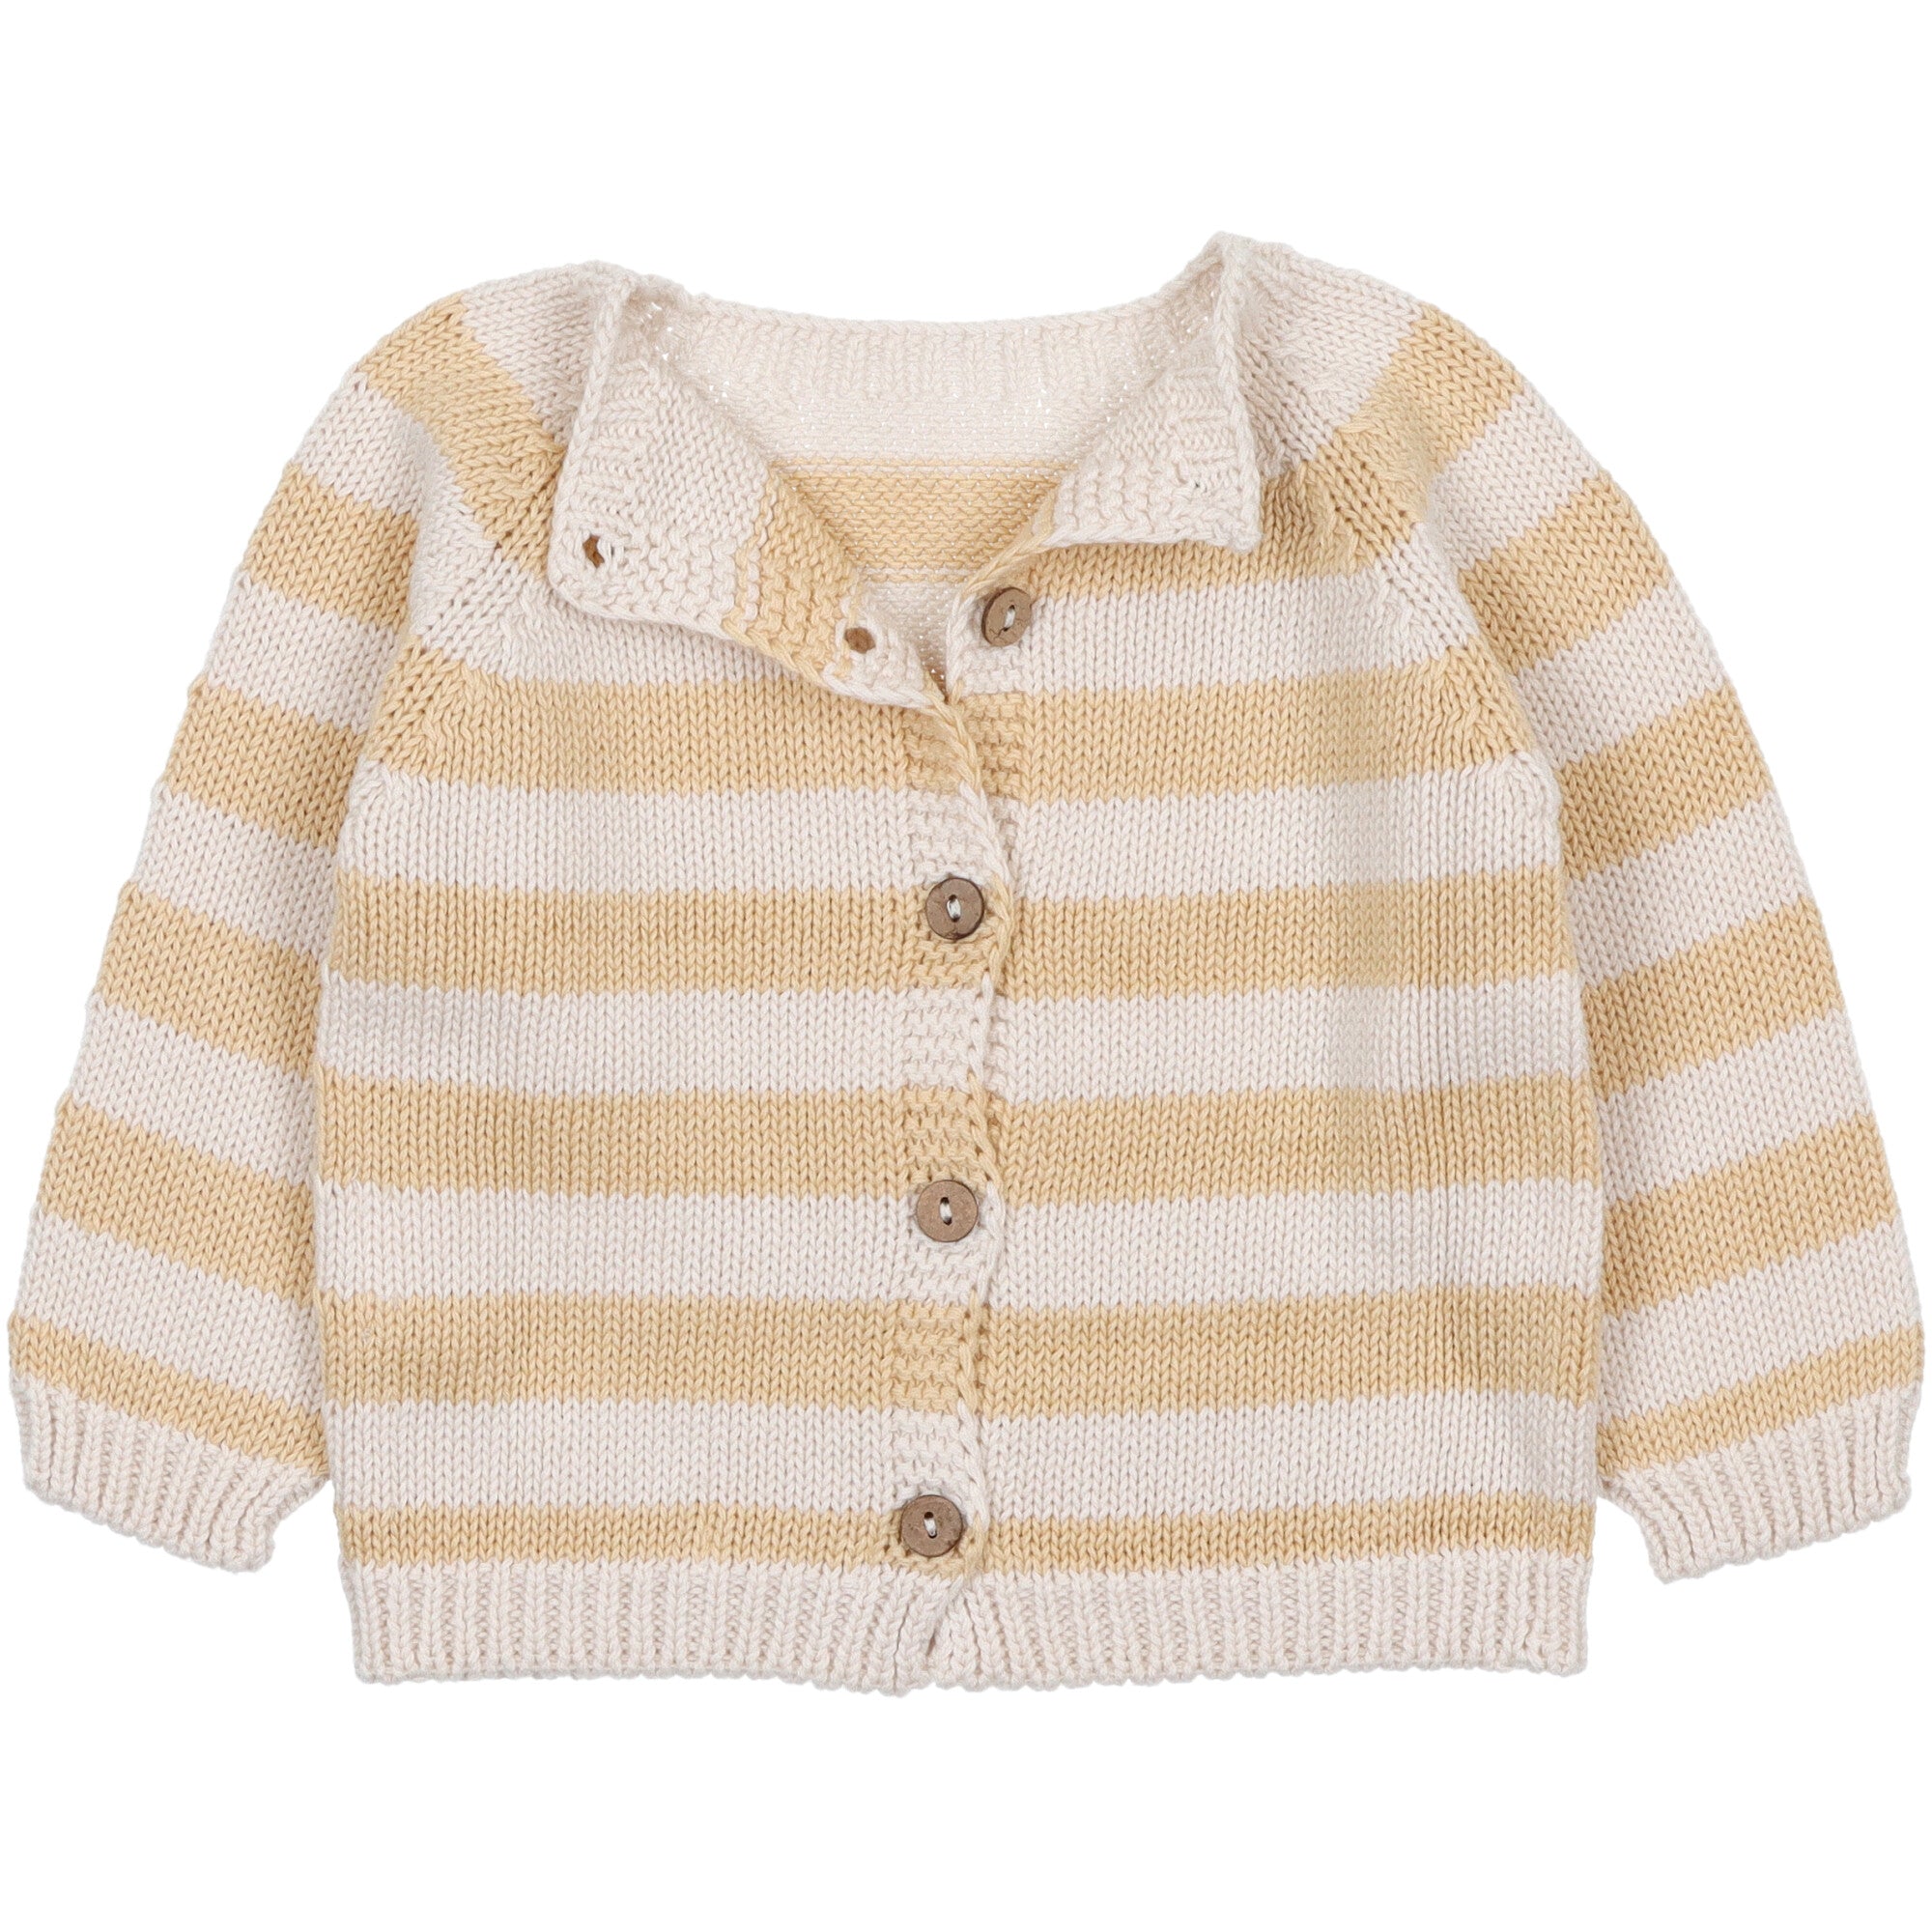 maglione-per-bambini-in-cotone-reversibile